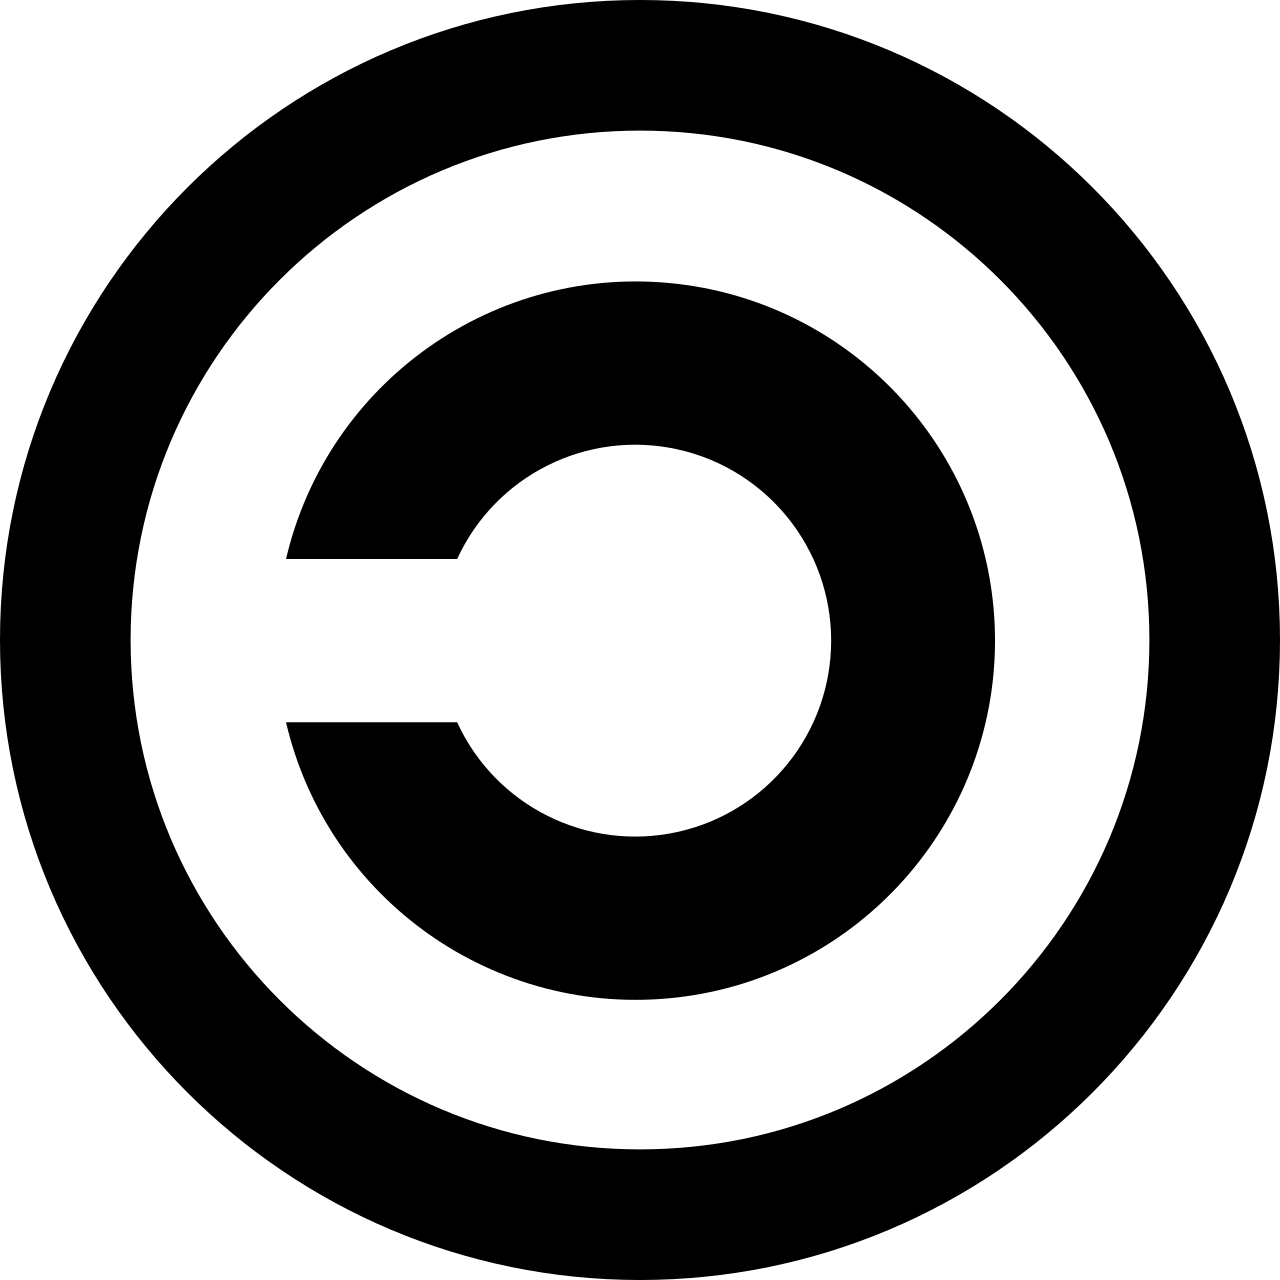 Cette image représente le symbole Copyleft, un copyright renversé (le C est inversé par une symétrie verticale)